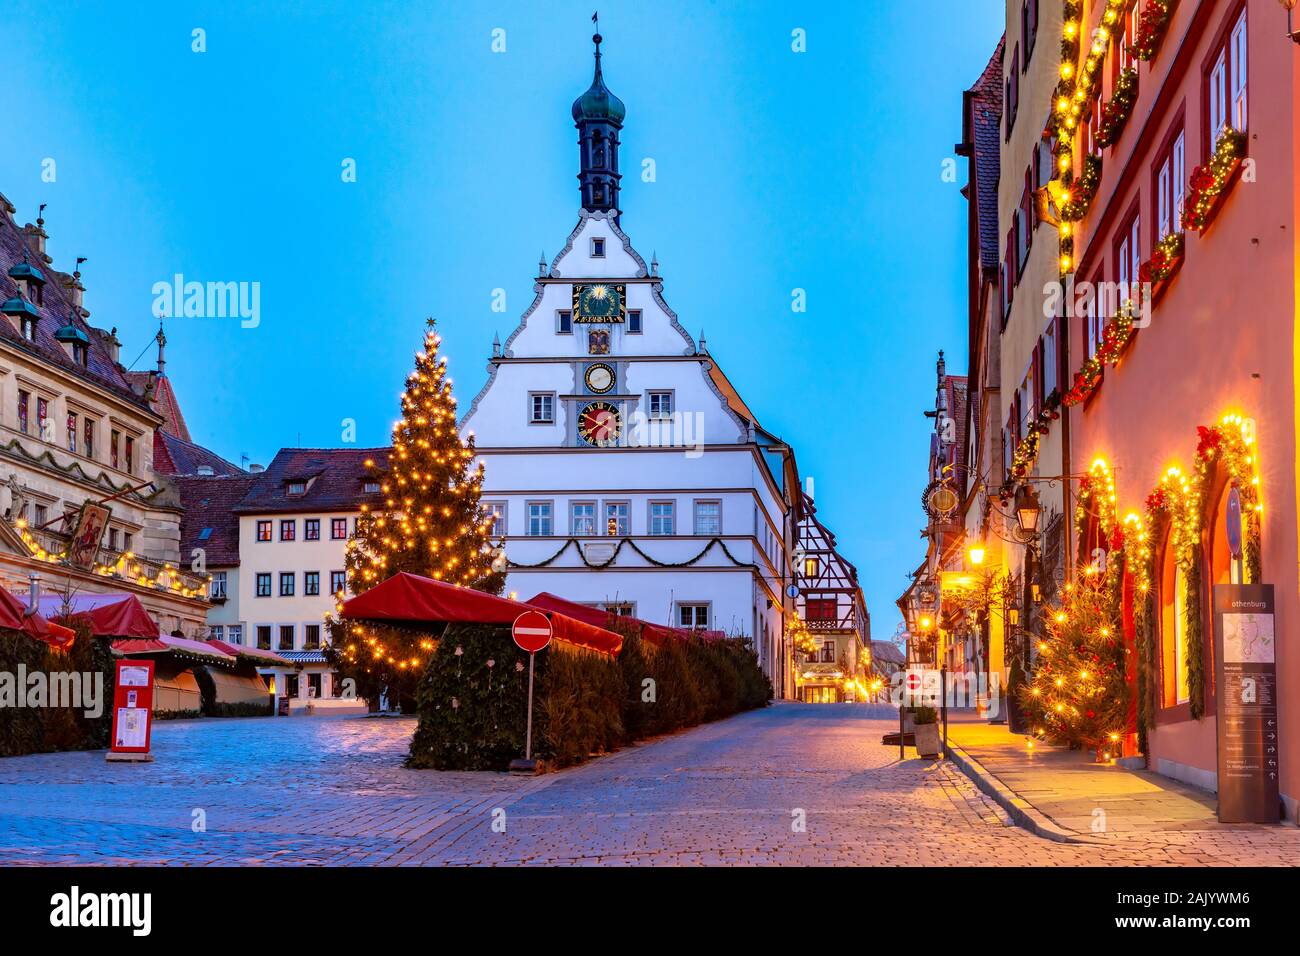 Dekoriert und beleuchtet Weihnachten Straße und Marktplatz in der mittelalterlichen Altstadt von Rothenburg o.d. Tauber, Bayern, Süddeutschland Stockfoto